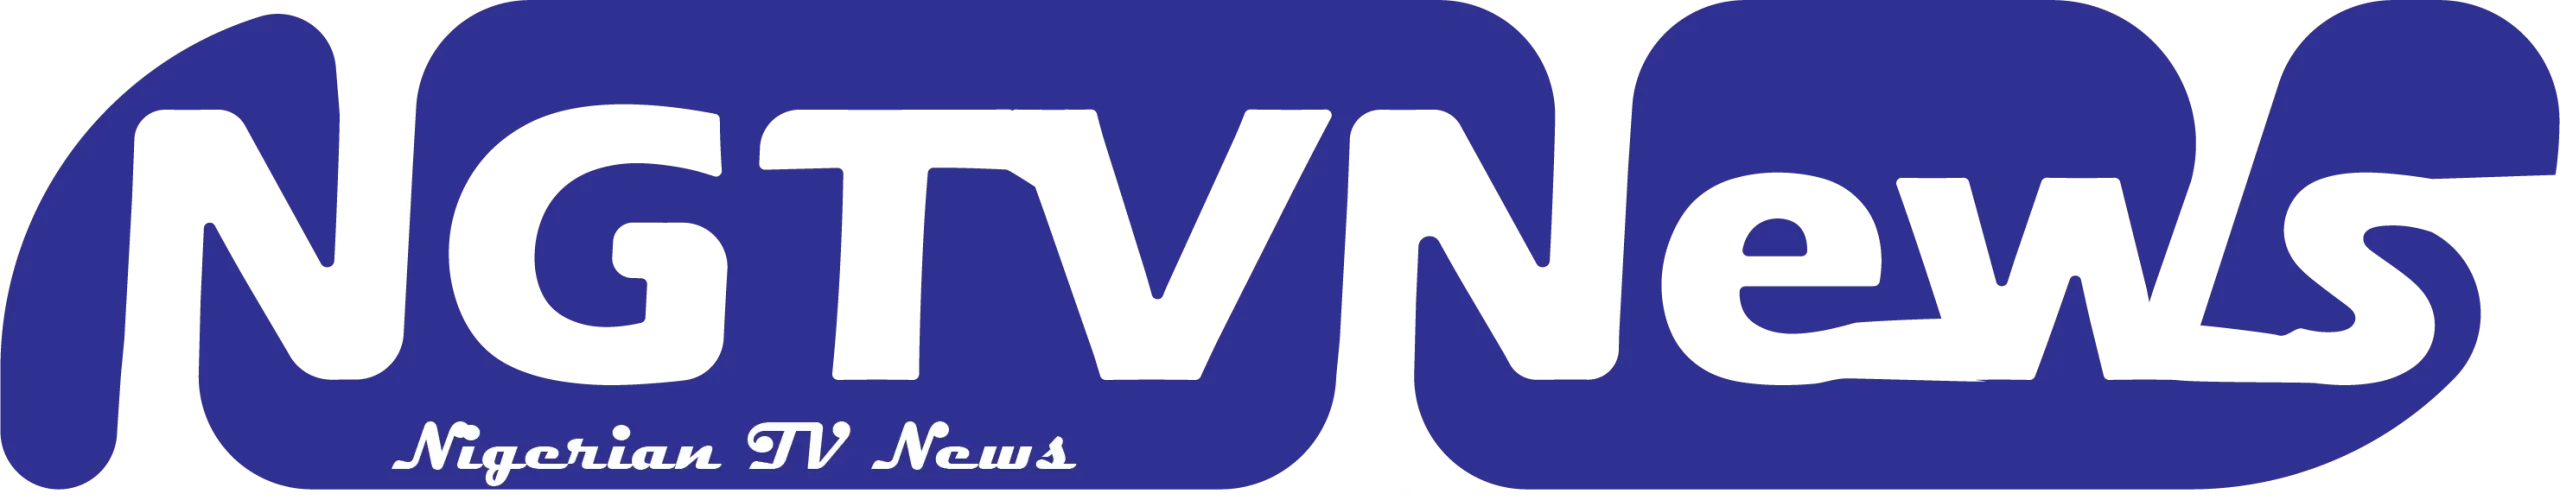 NGTVNews & Media Publishing